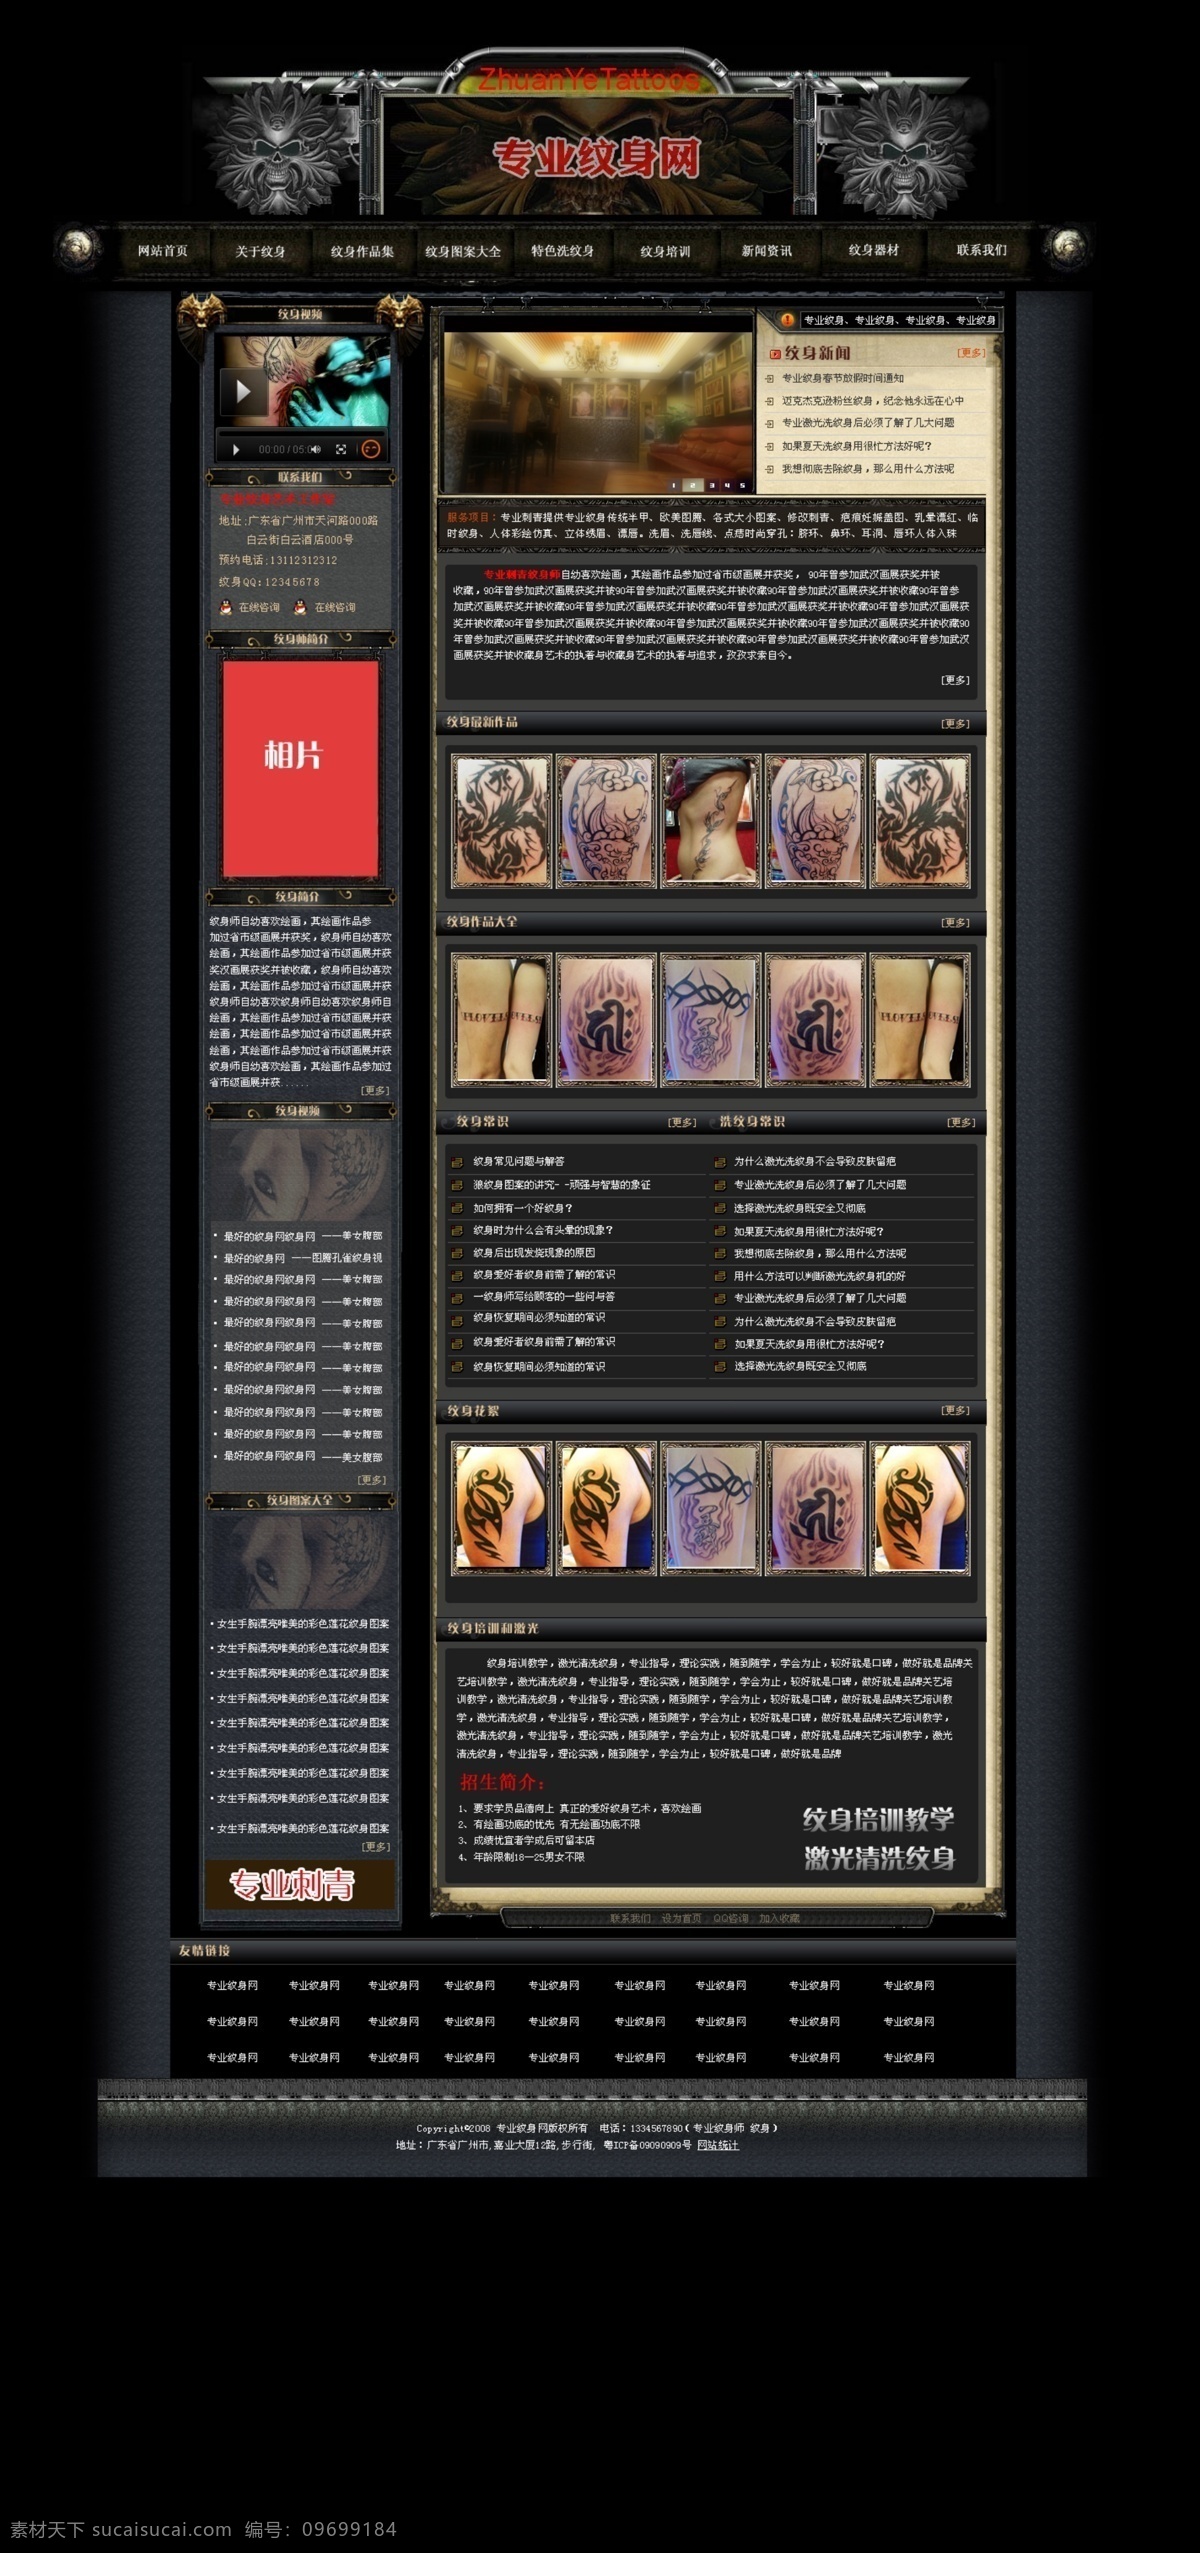 纹身 网页模板 骷髅 源文件 中文模版 纹身网页模板 黑色系 网页素材